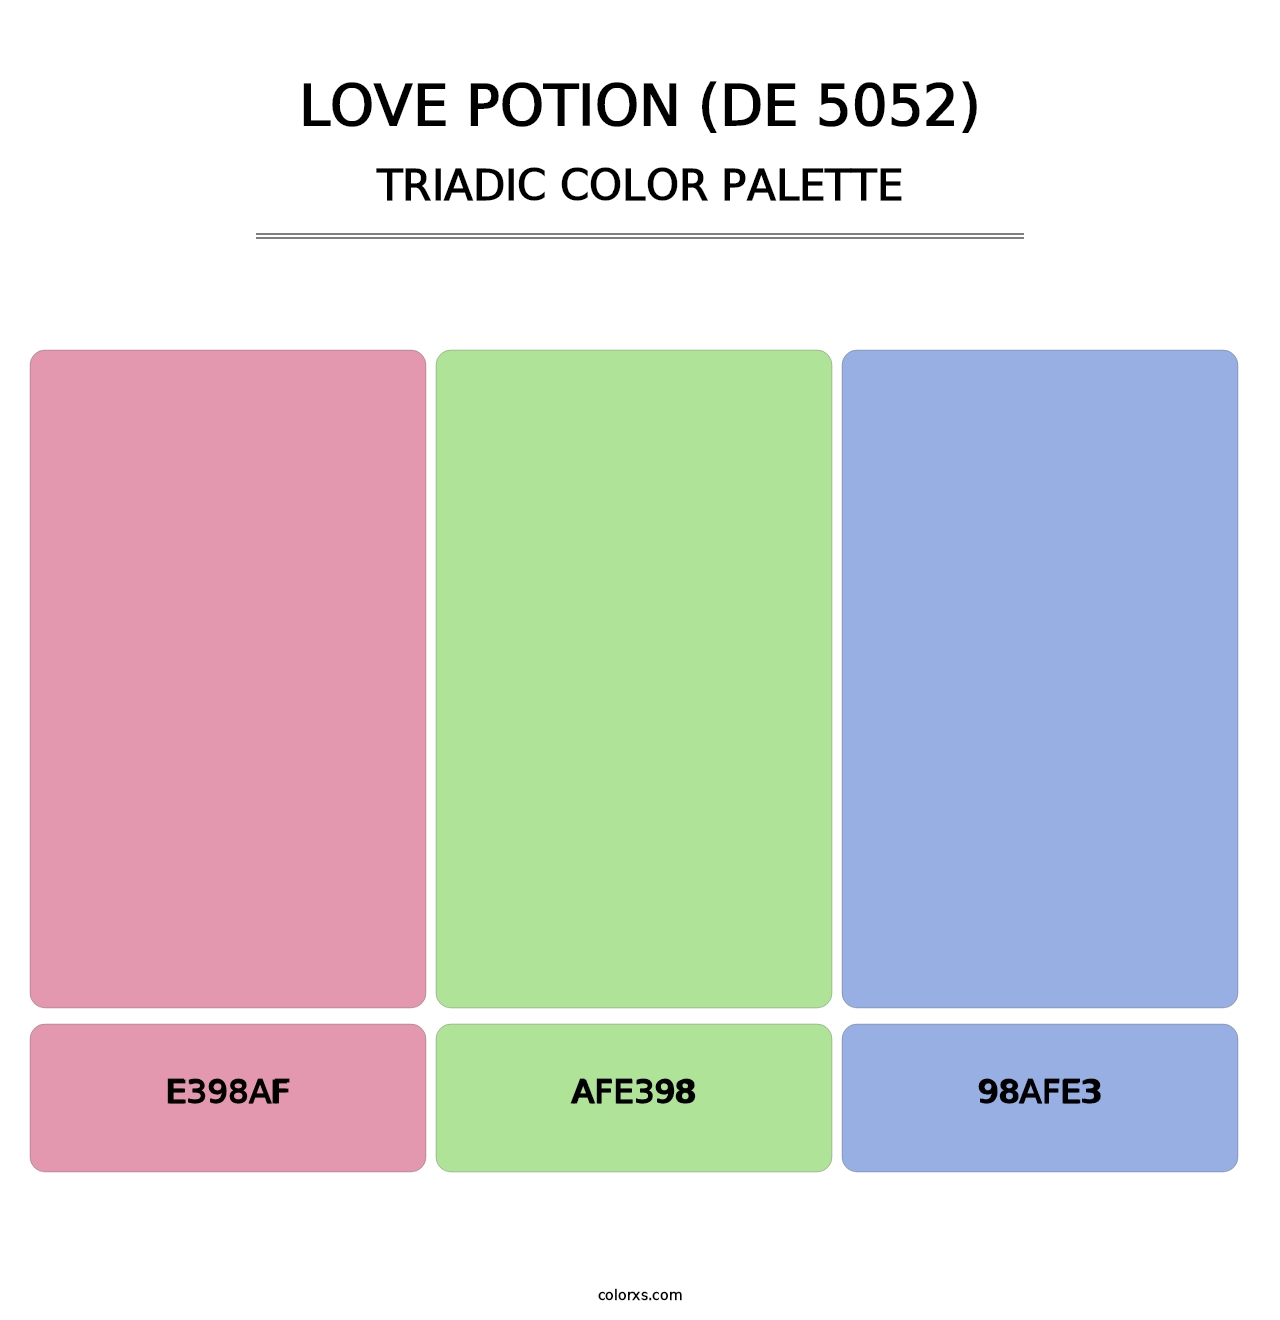 Love Potion (DE 5052) - Triadic Color Palette